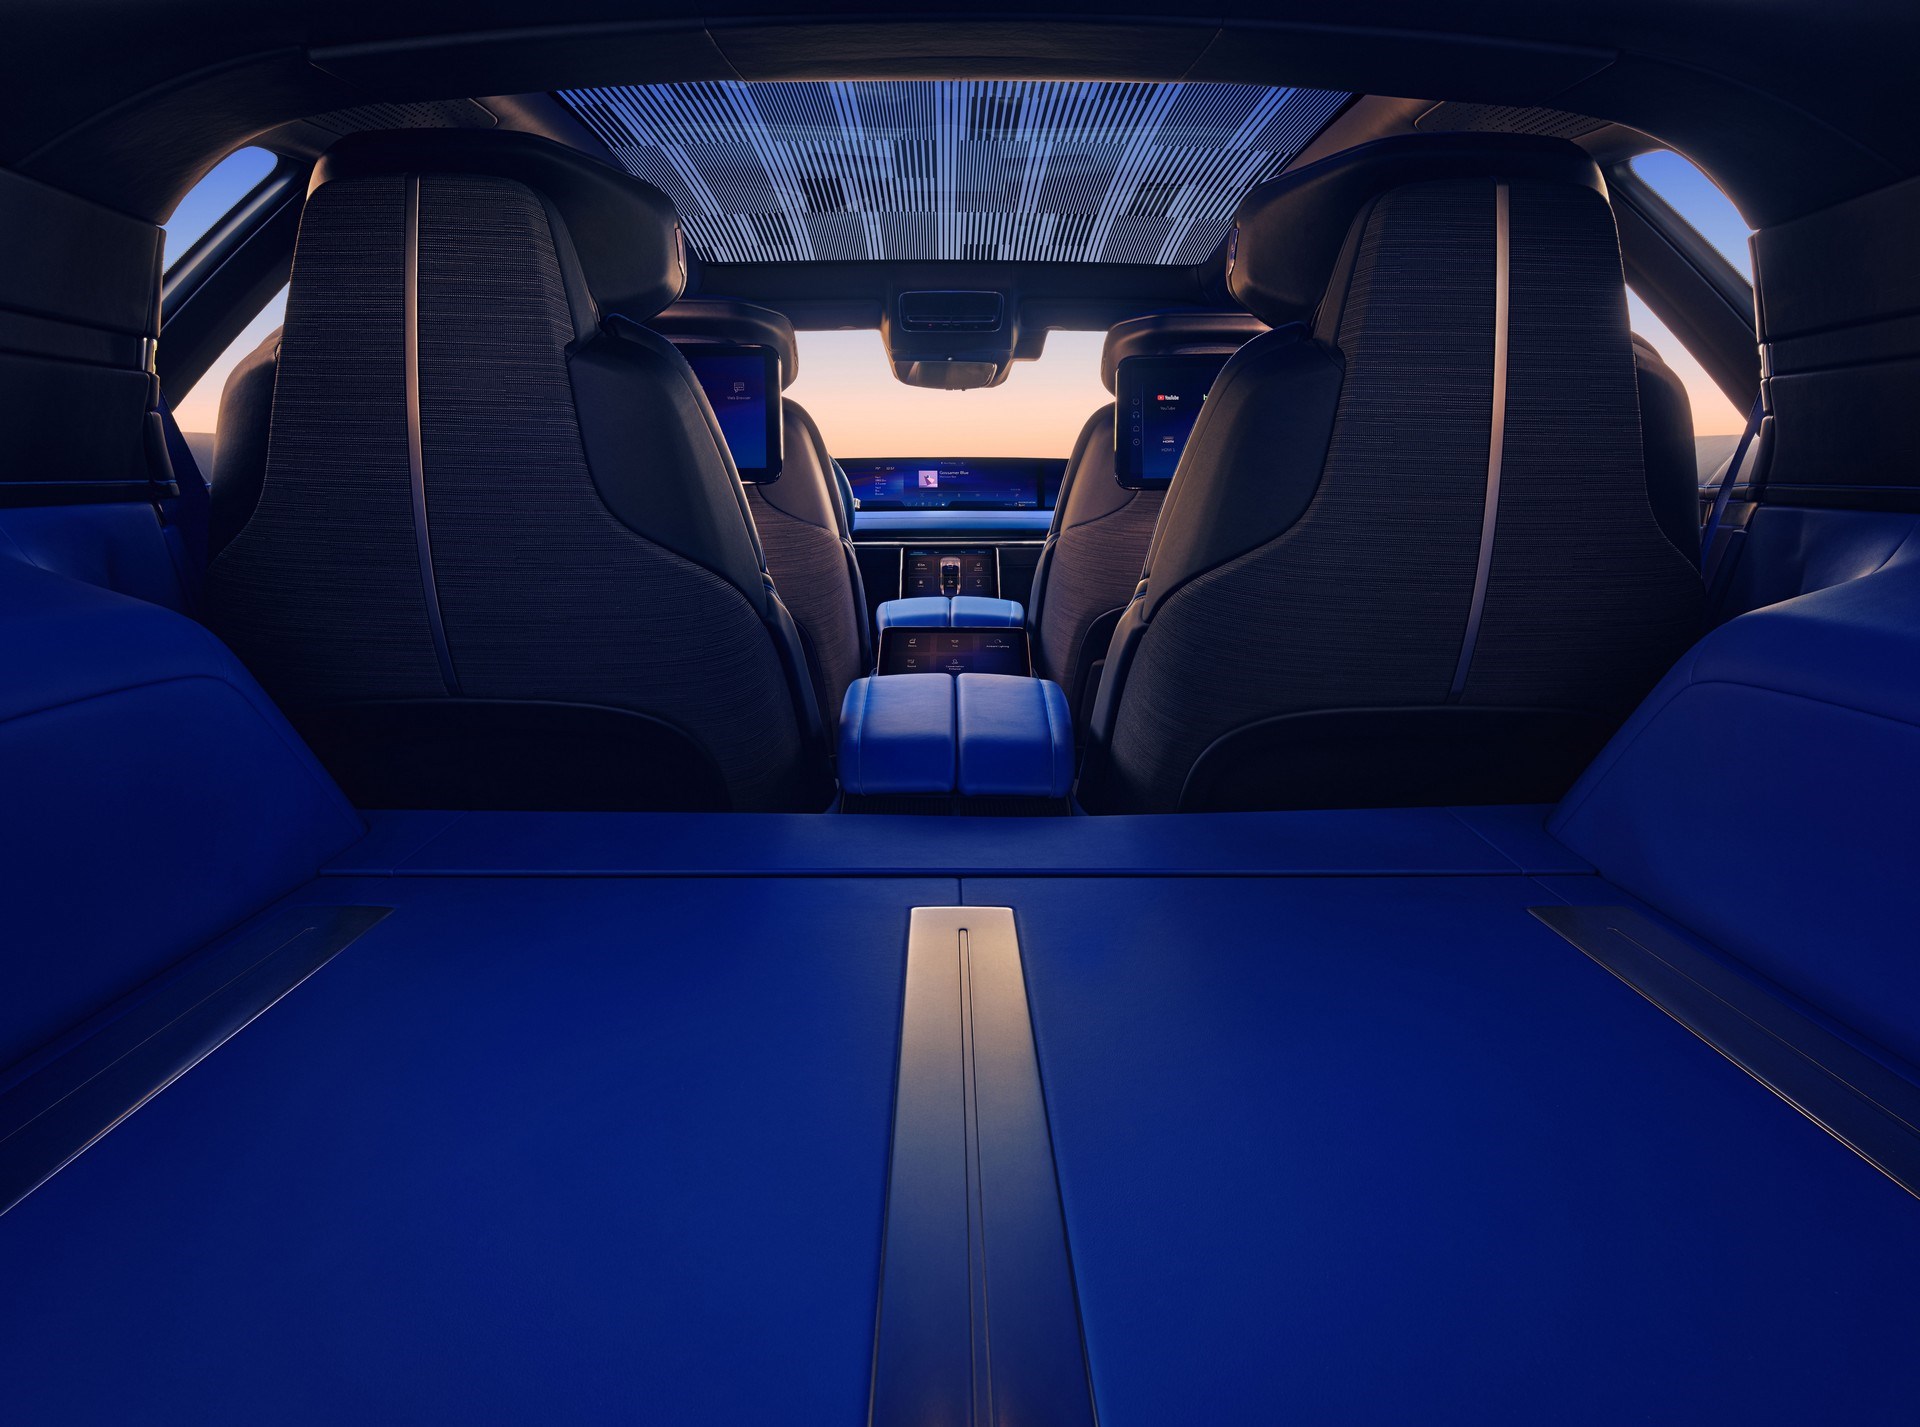 300 bin dolarlık elektrikli otomobil tanıtıldı: Cadillac Celestiq